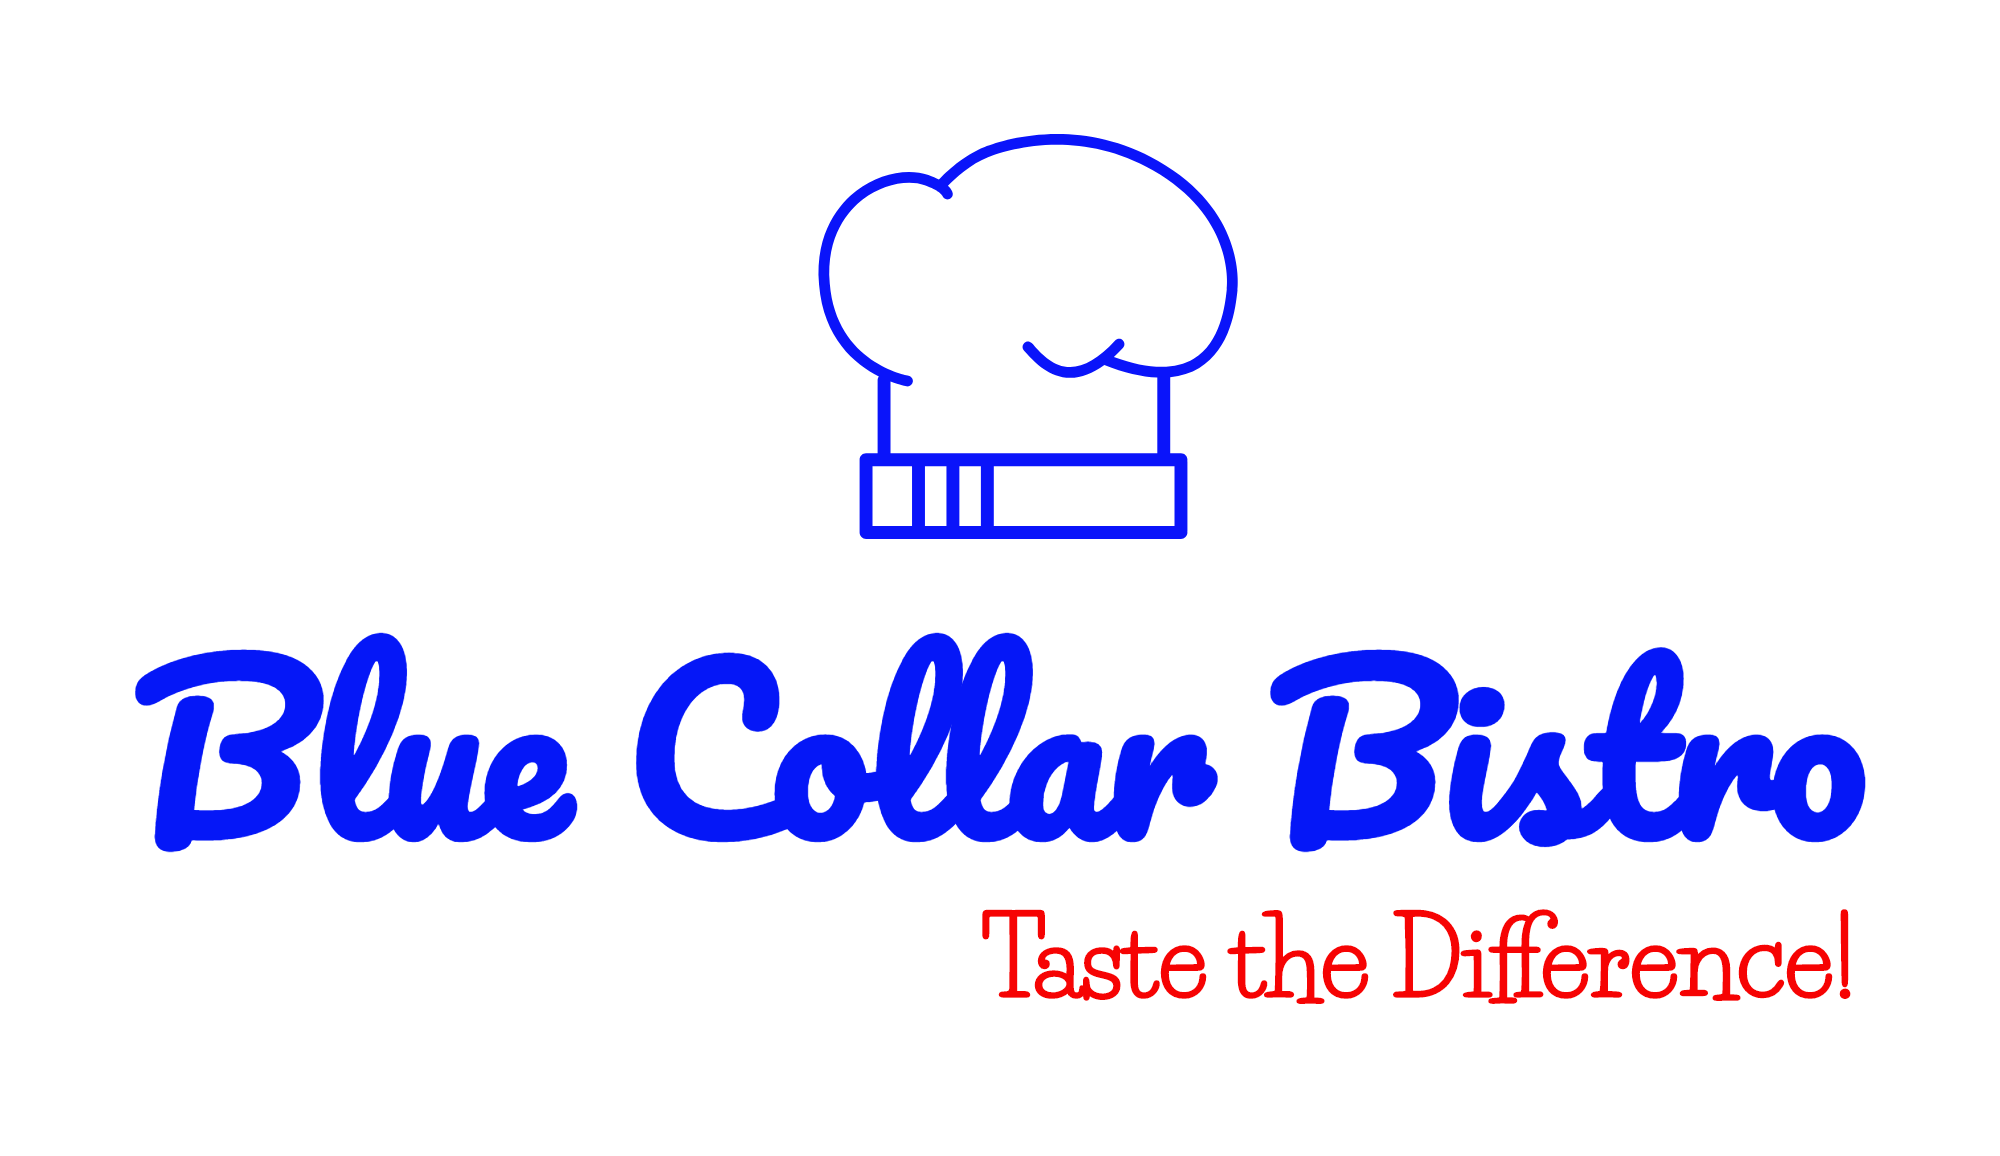 Blue Collar Bistro